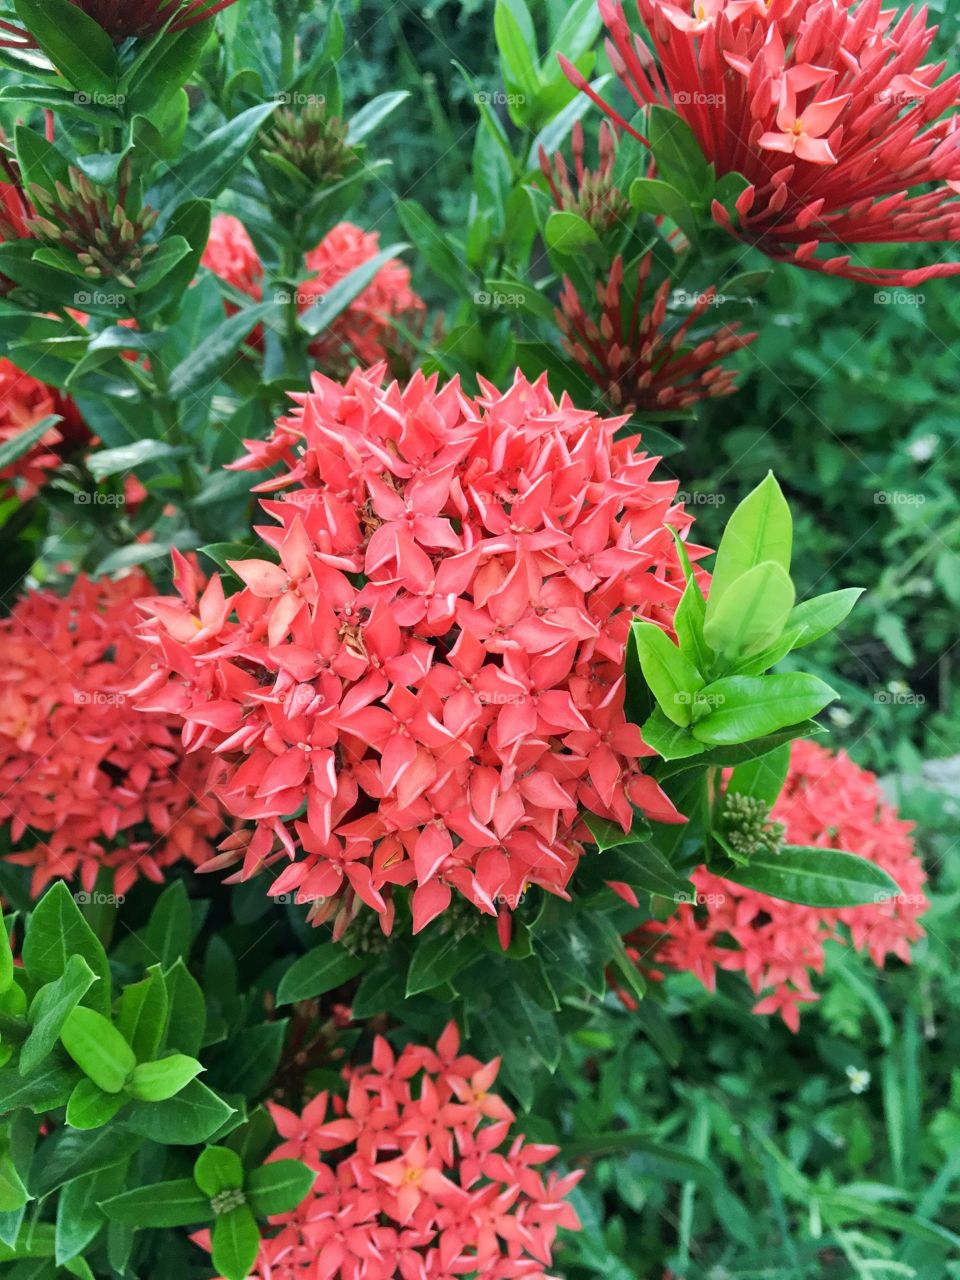 Red ixora flower in nature garden